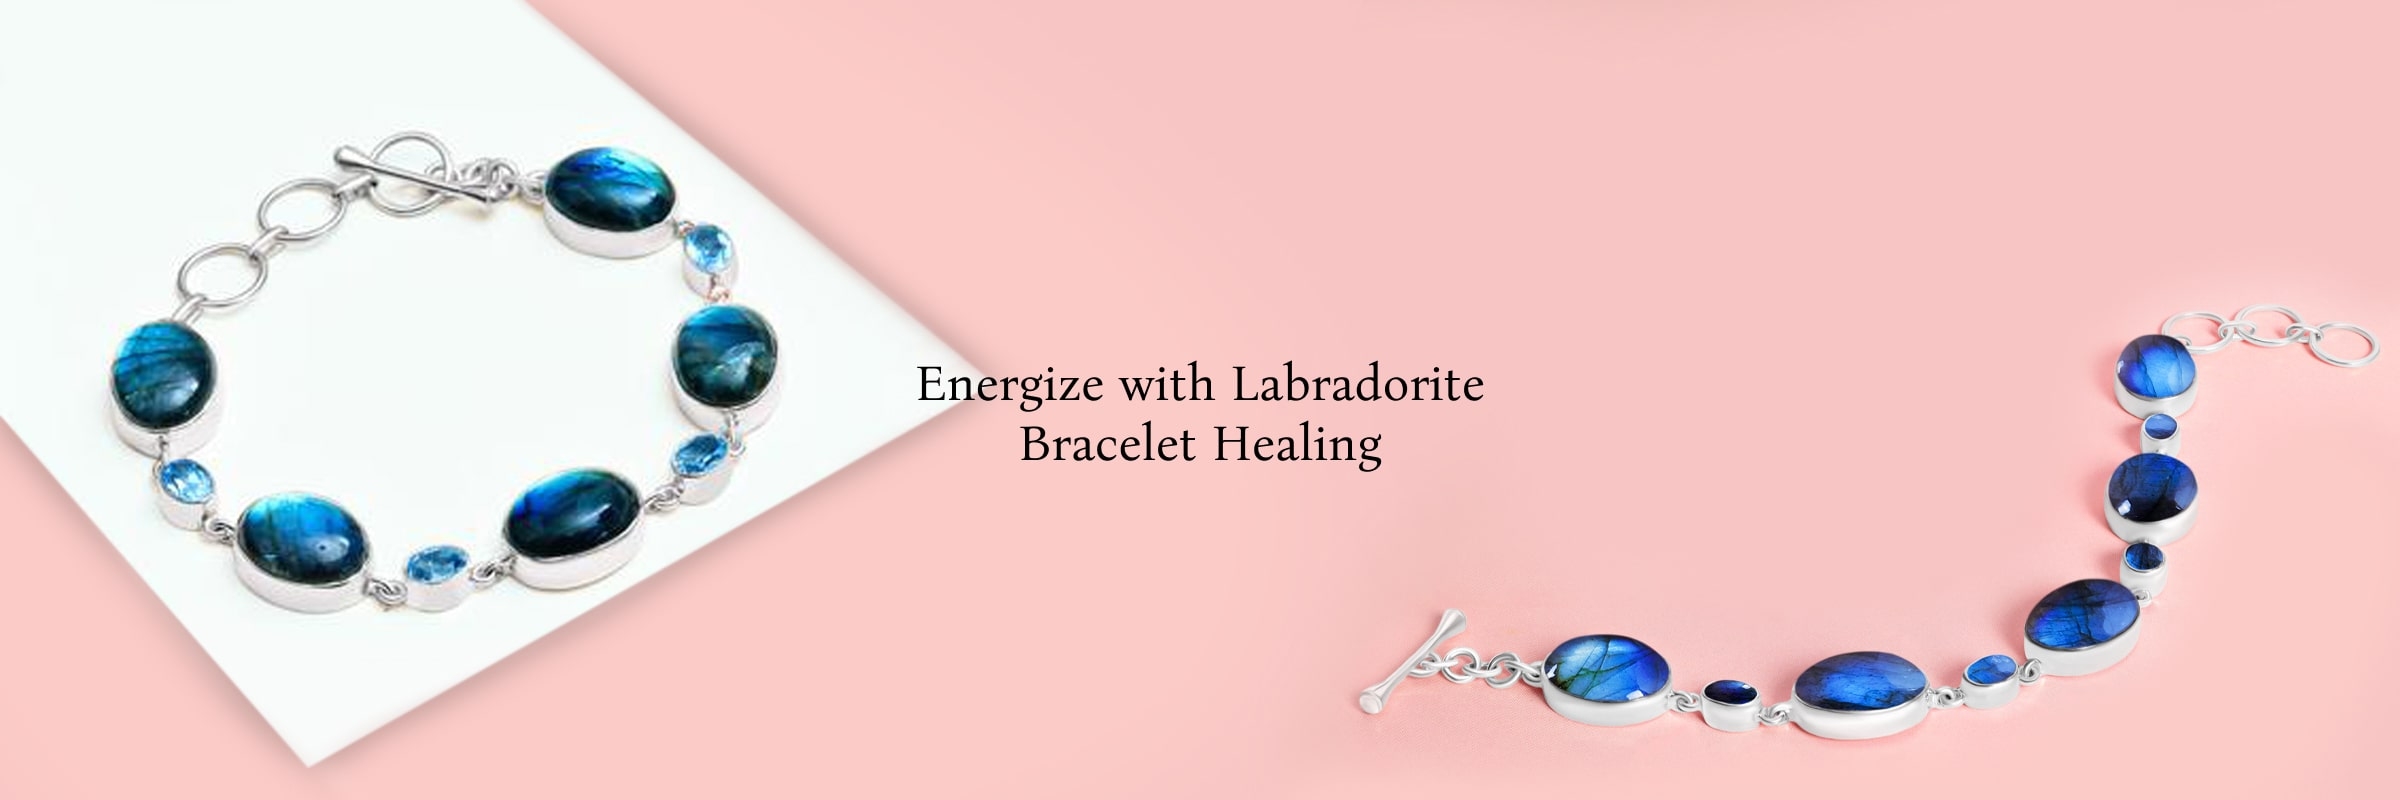 Healing properties of Labradorite bracelet